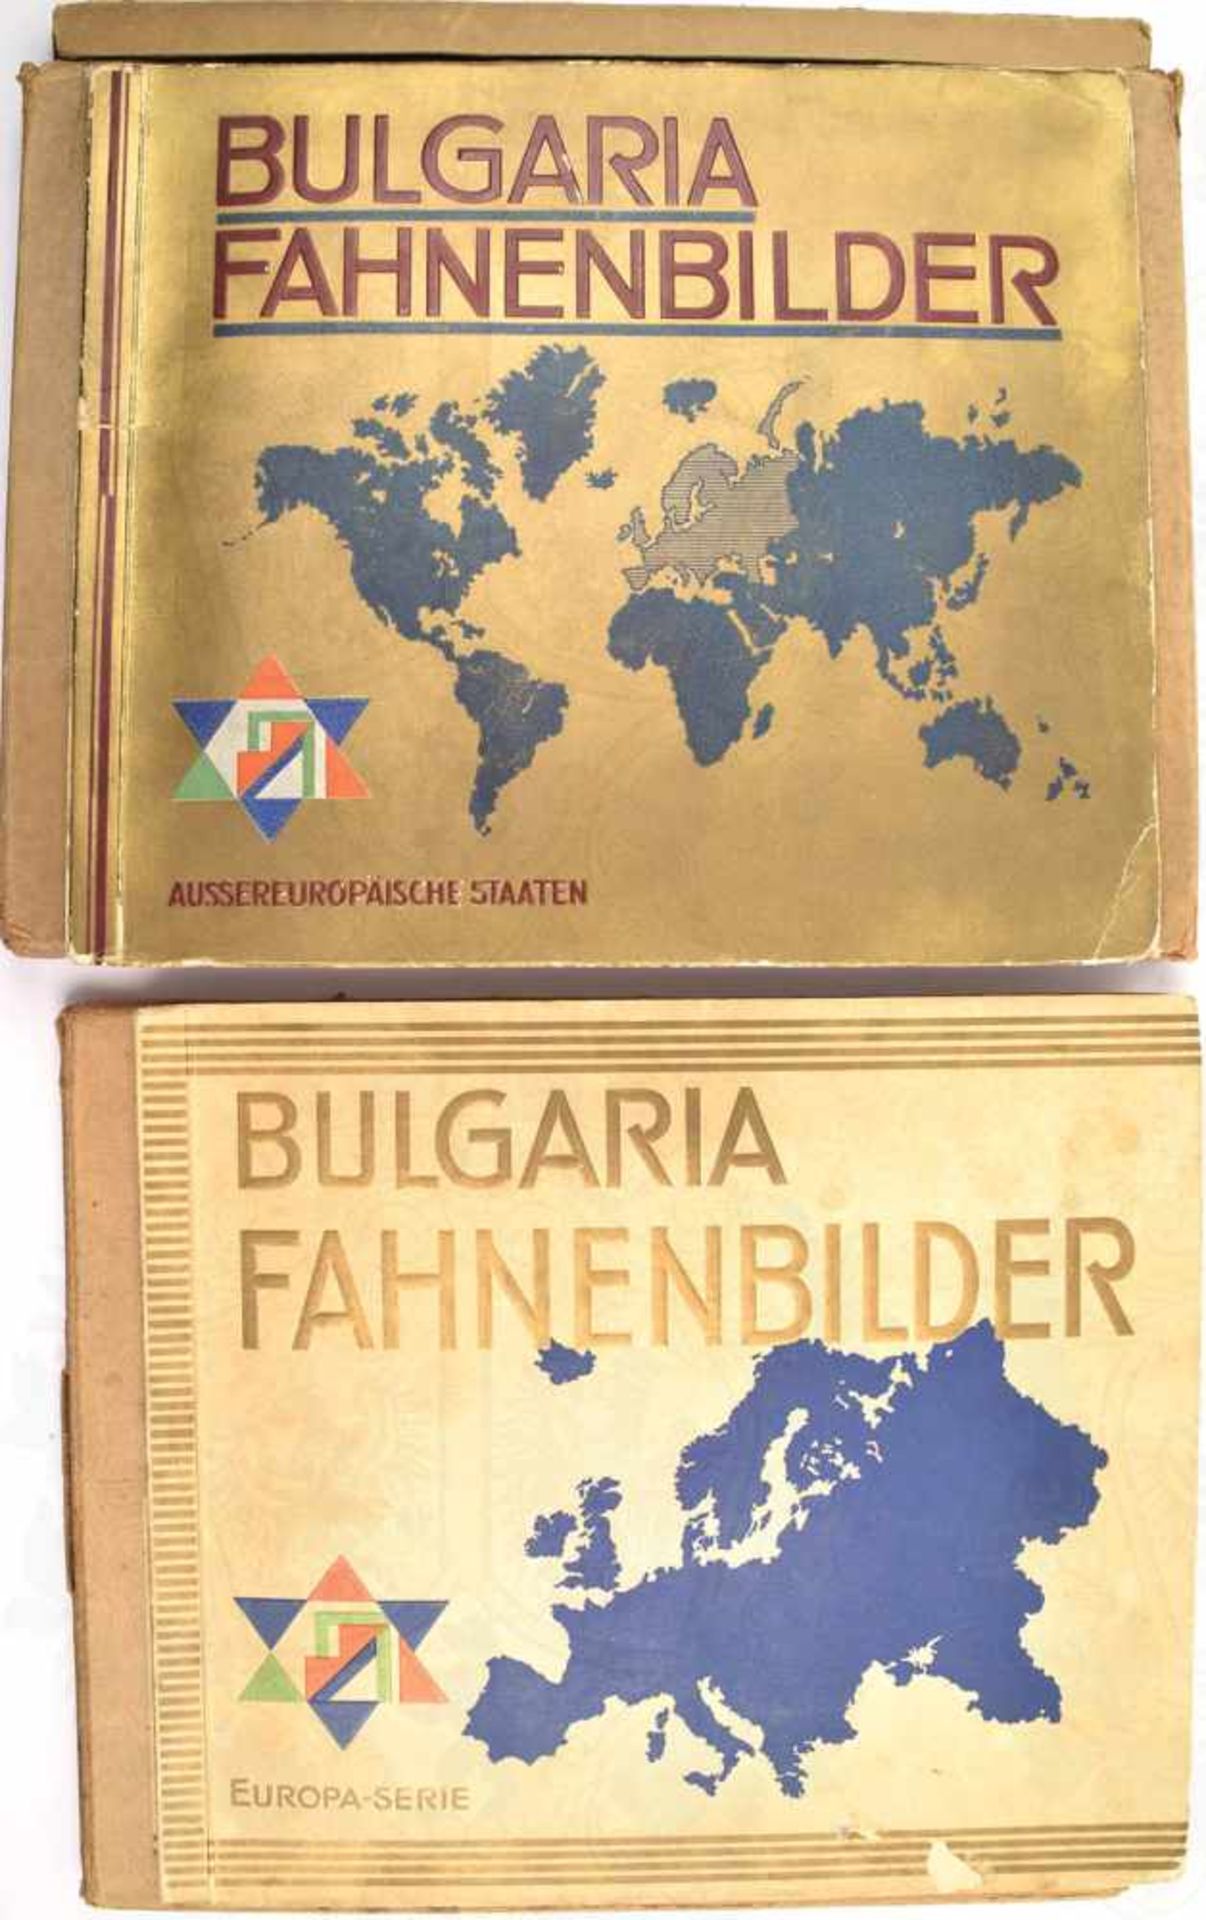 BULGARIA - FAHNENBILDER, Europa-Serie u. Außereuropäische Staaten, Reemtsma, Hamburg, 1936, ges. 400